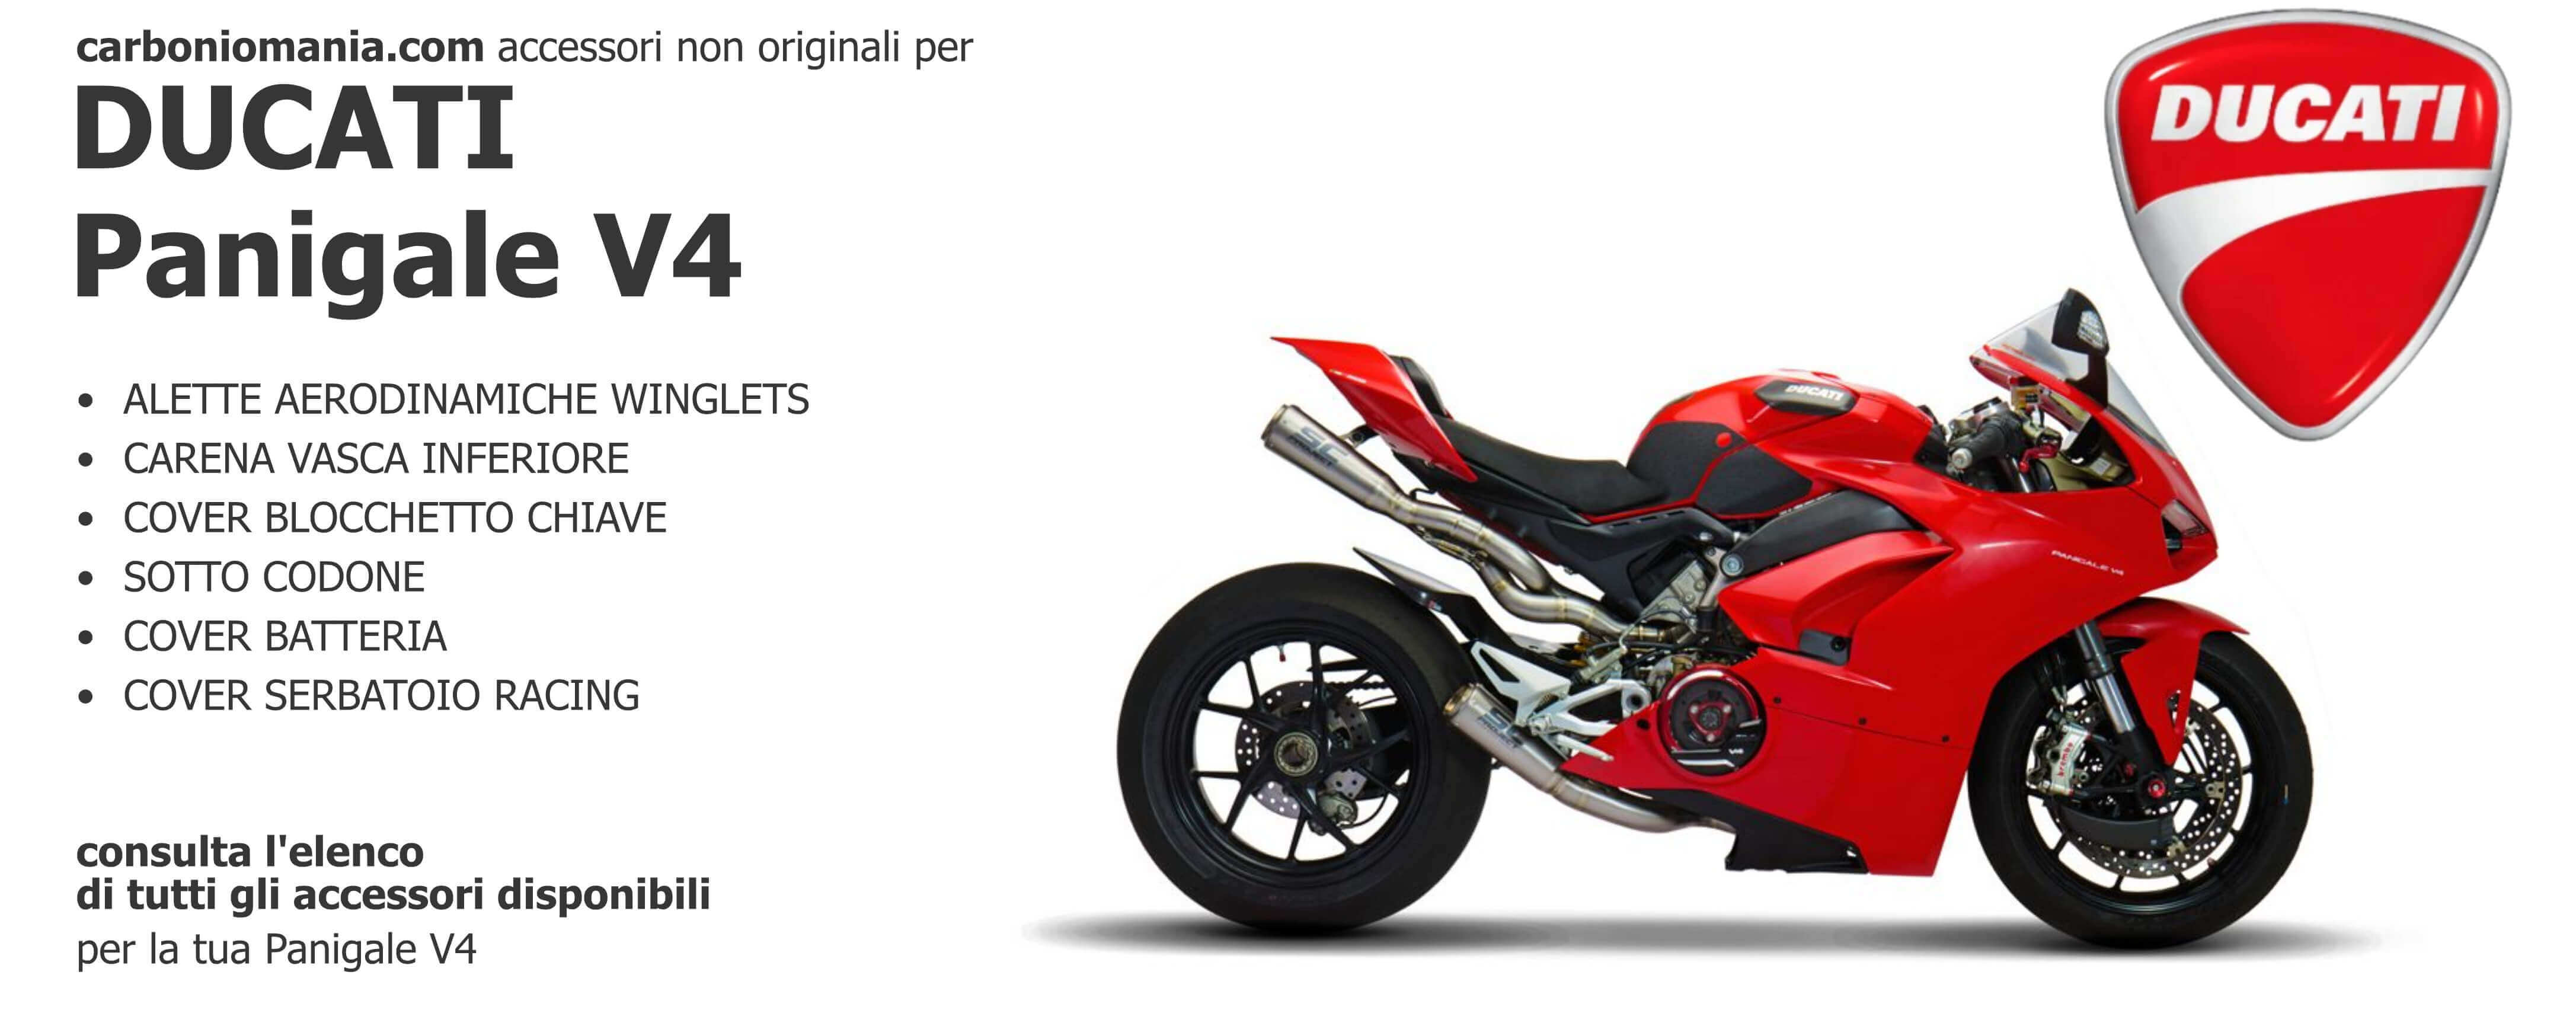 Ducati Panigale V4 - Non-original accessories in glossy or matt carbon on Carboniomania